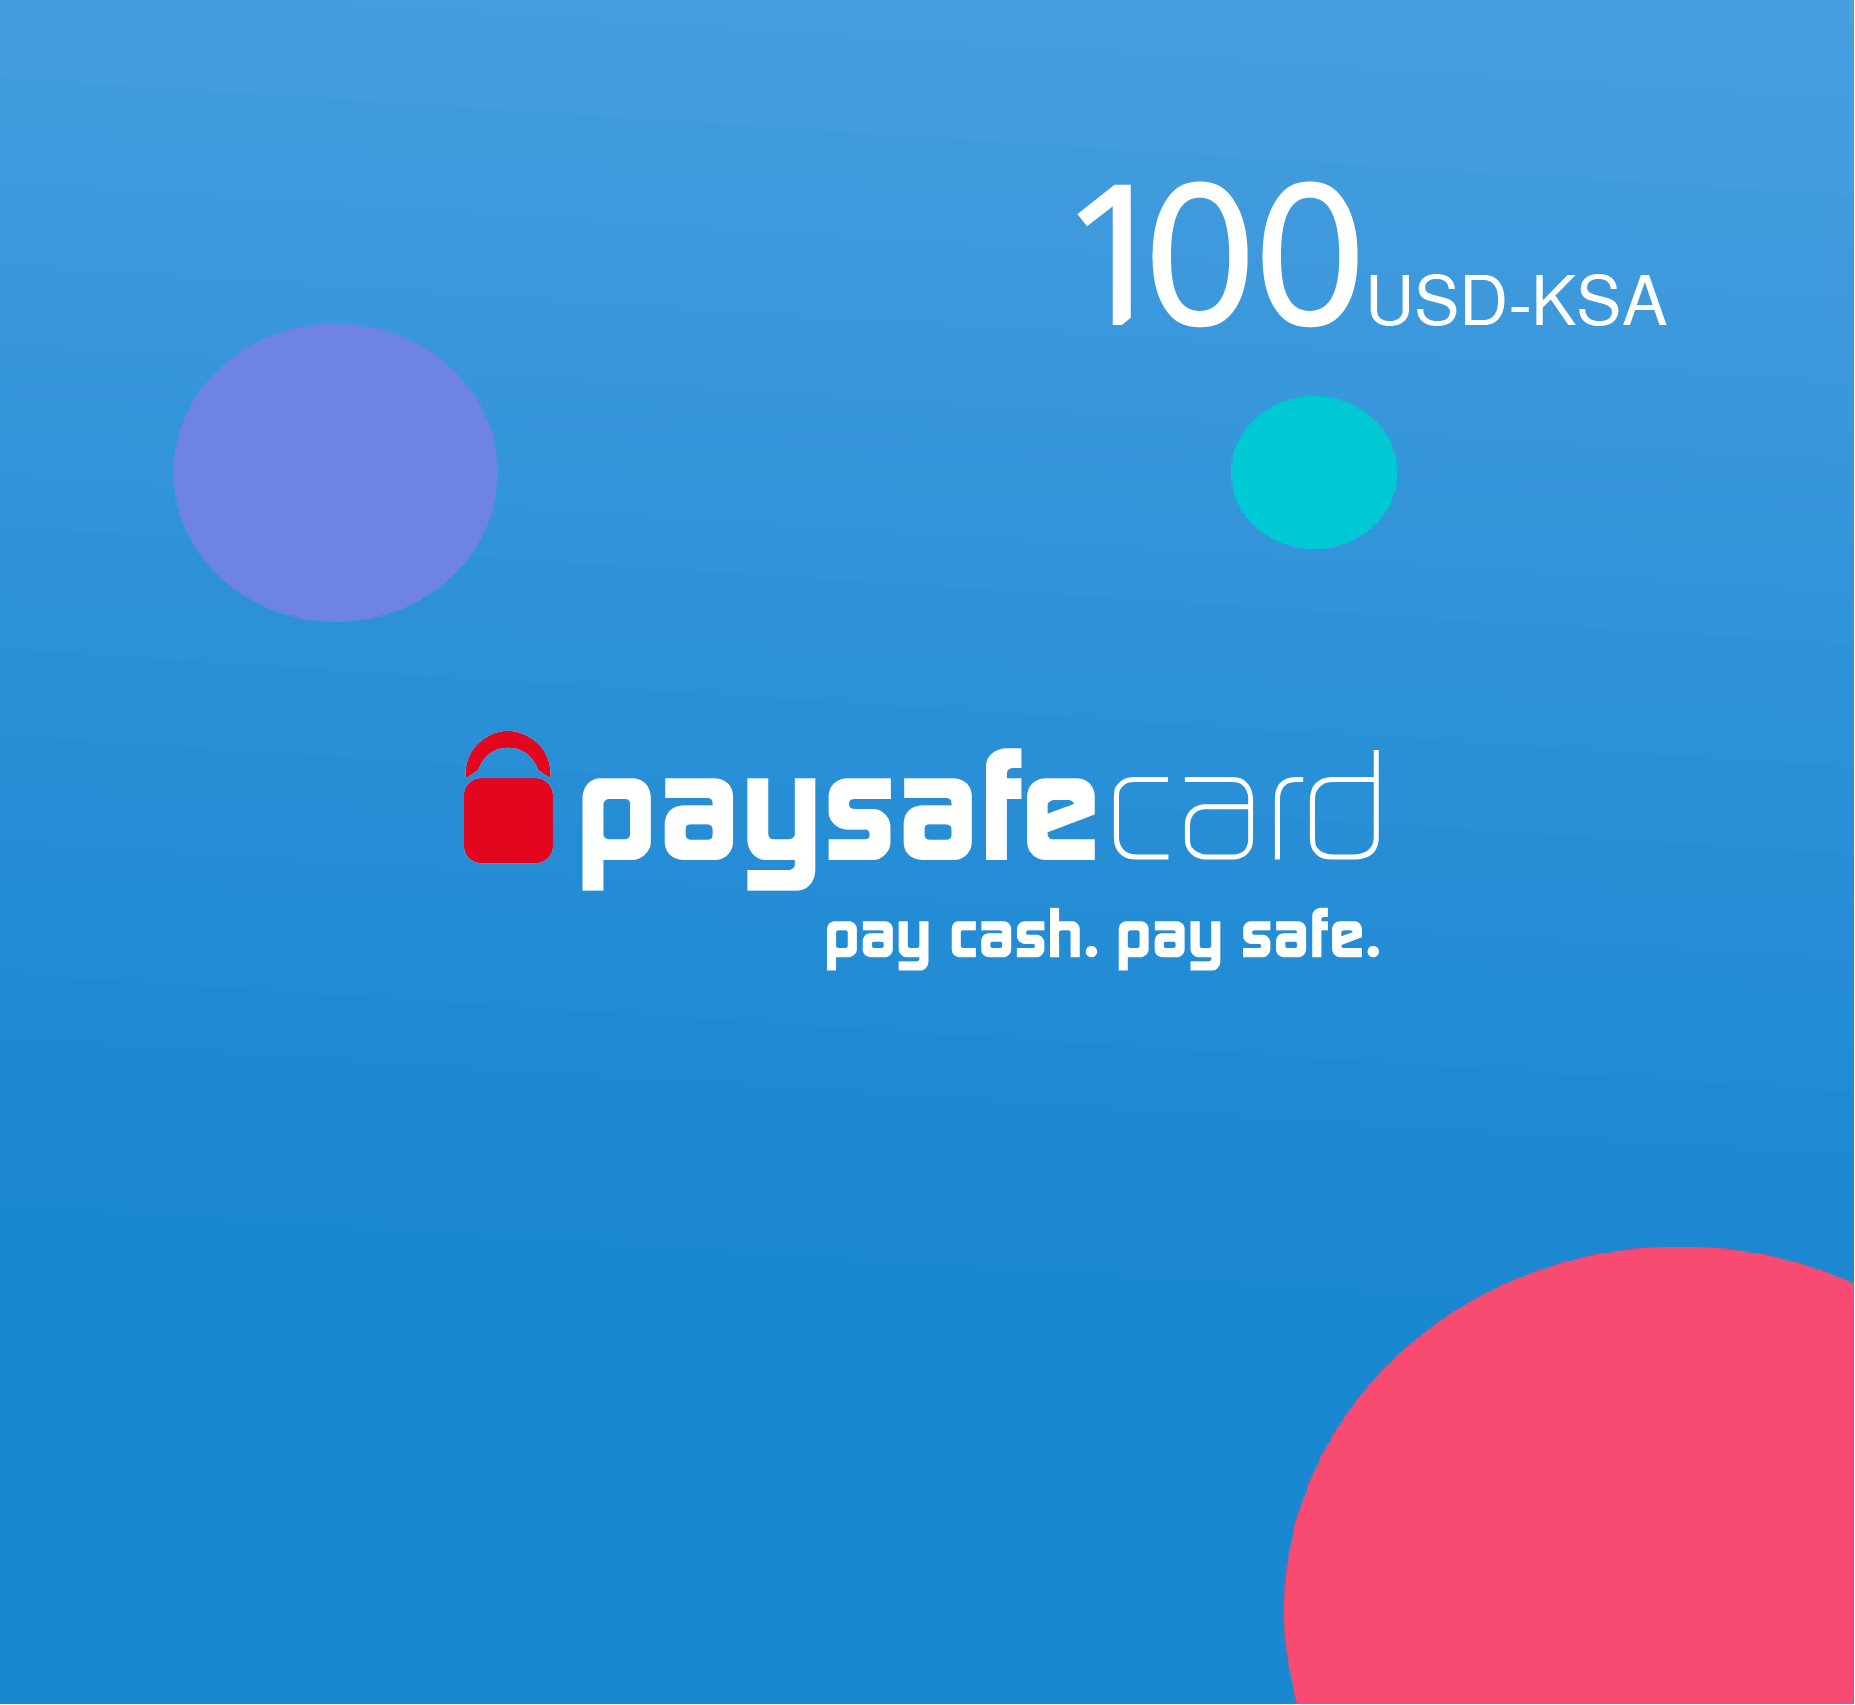 Paysafe card 100 USD - KSA